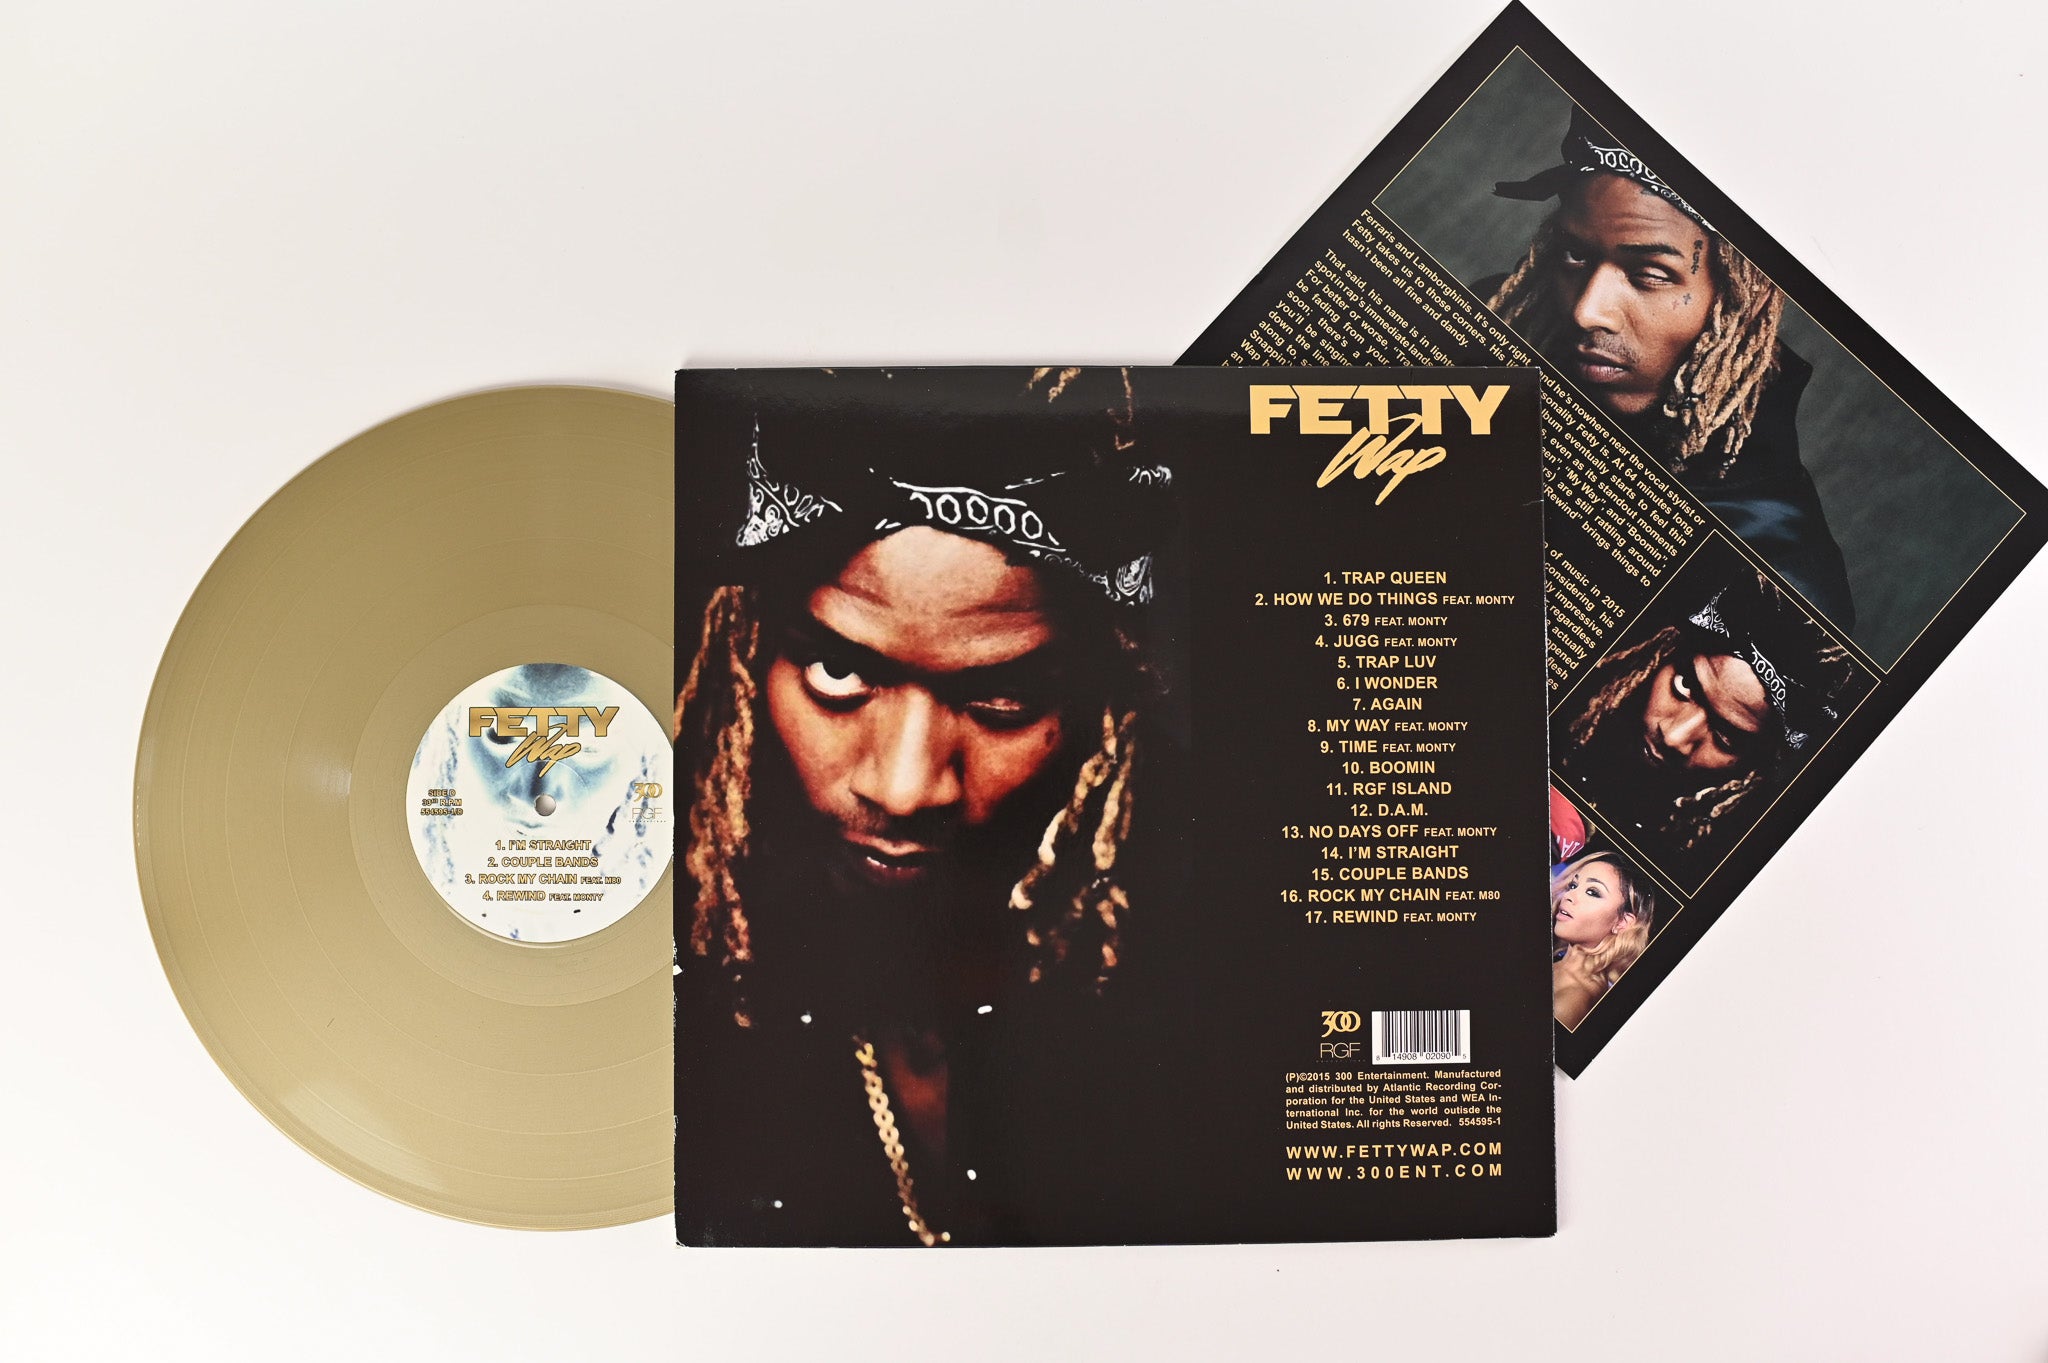 Fetty Wap - Fetty Wap Unofficial Release on 300 Entertainment Gold Vinyl